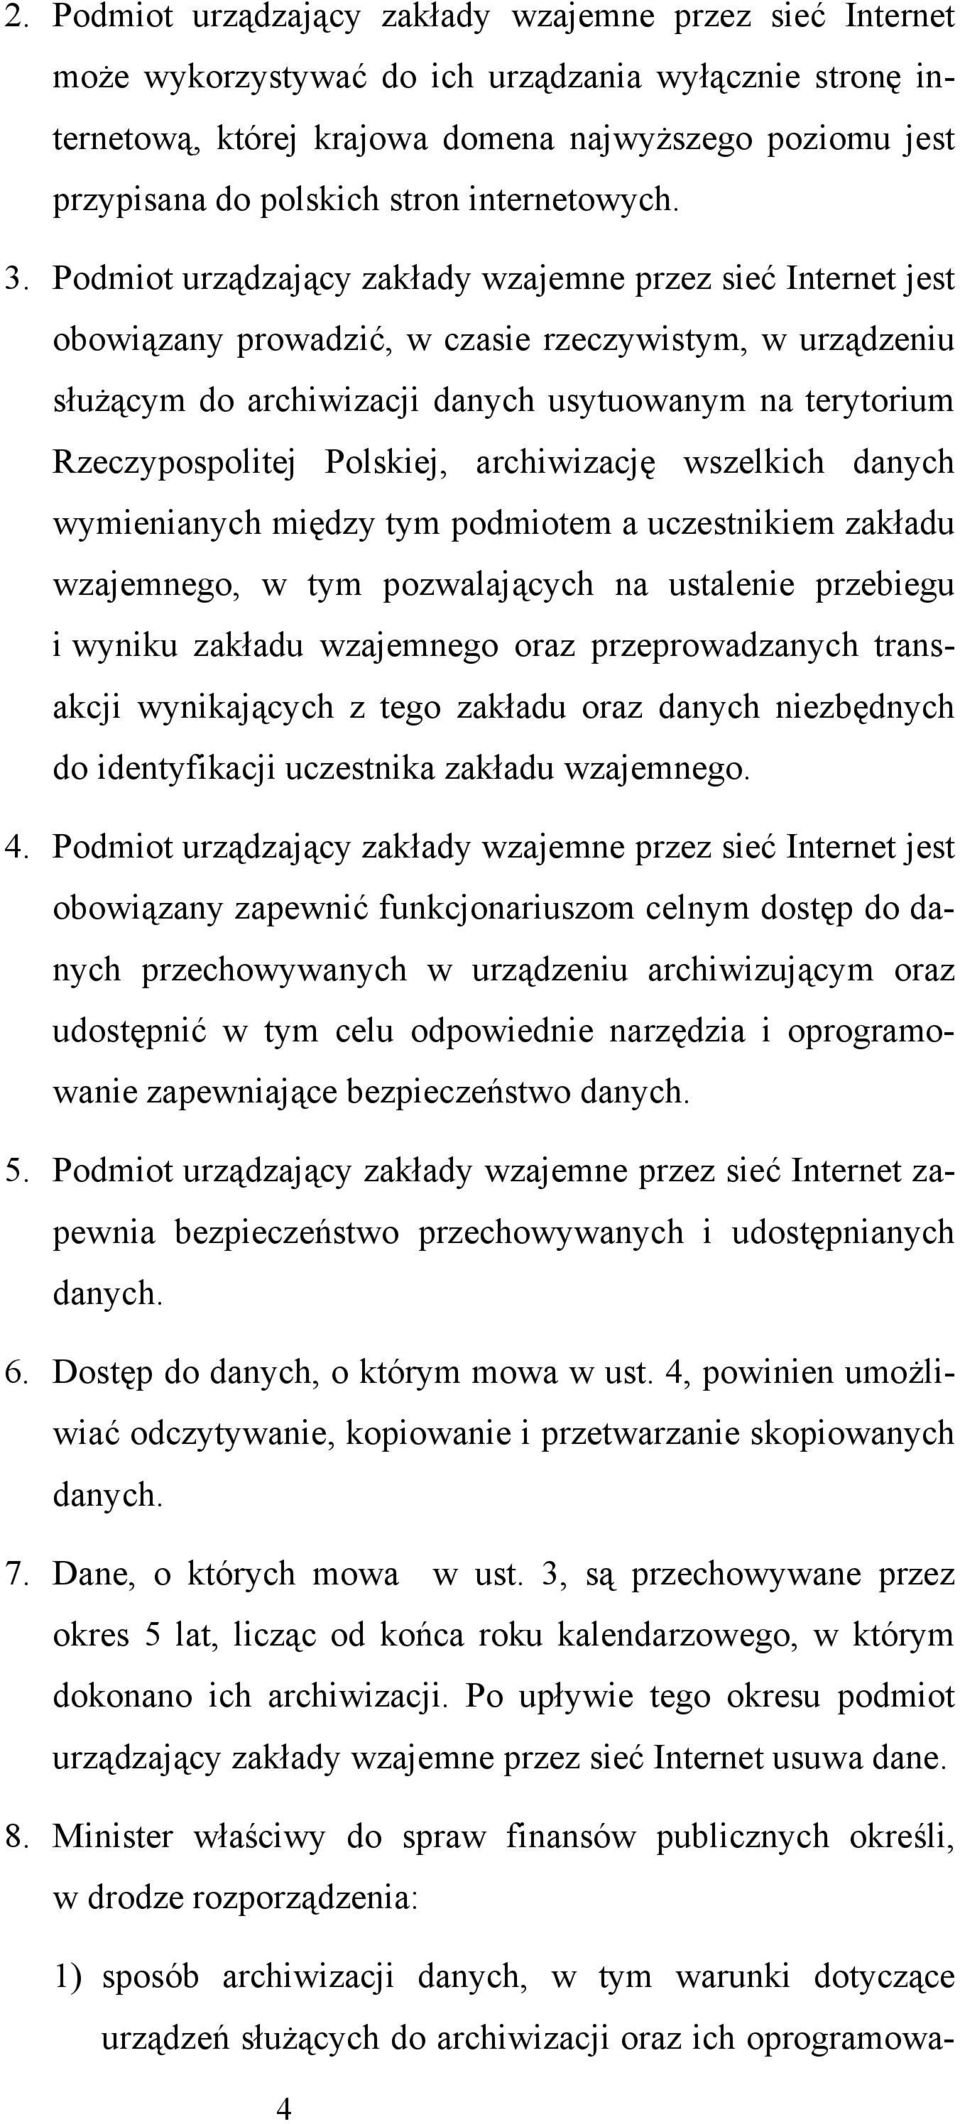 Podmiot urządzający zakłady wzajemne przez sieć Internet jest obowiązany prowadzić, w czasie rzeczywistym, w urządzeniu służącym do archiwizacji danych usytuowanym na terytorium Rzeczypospolitej